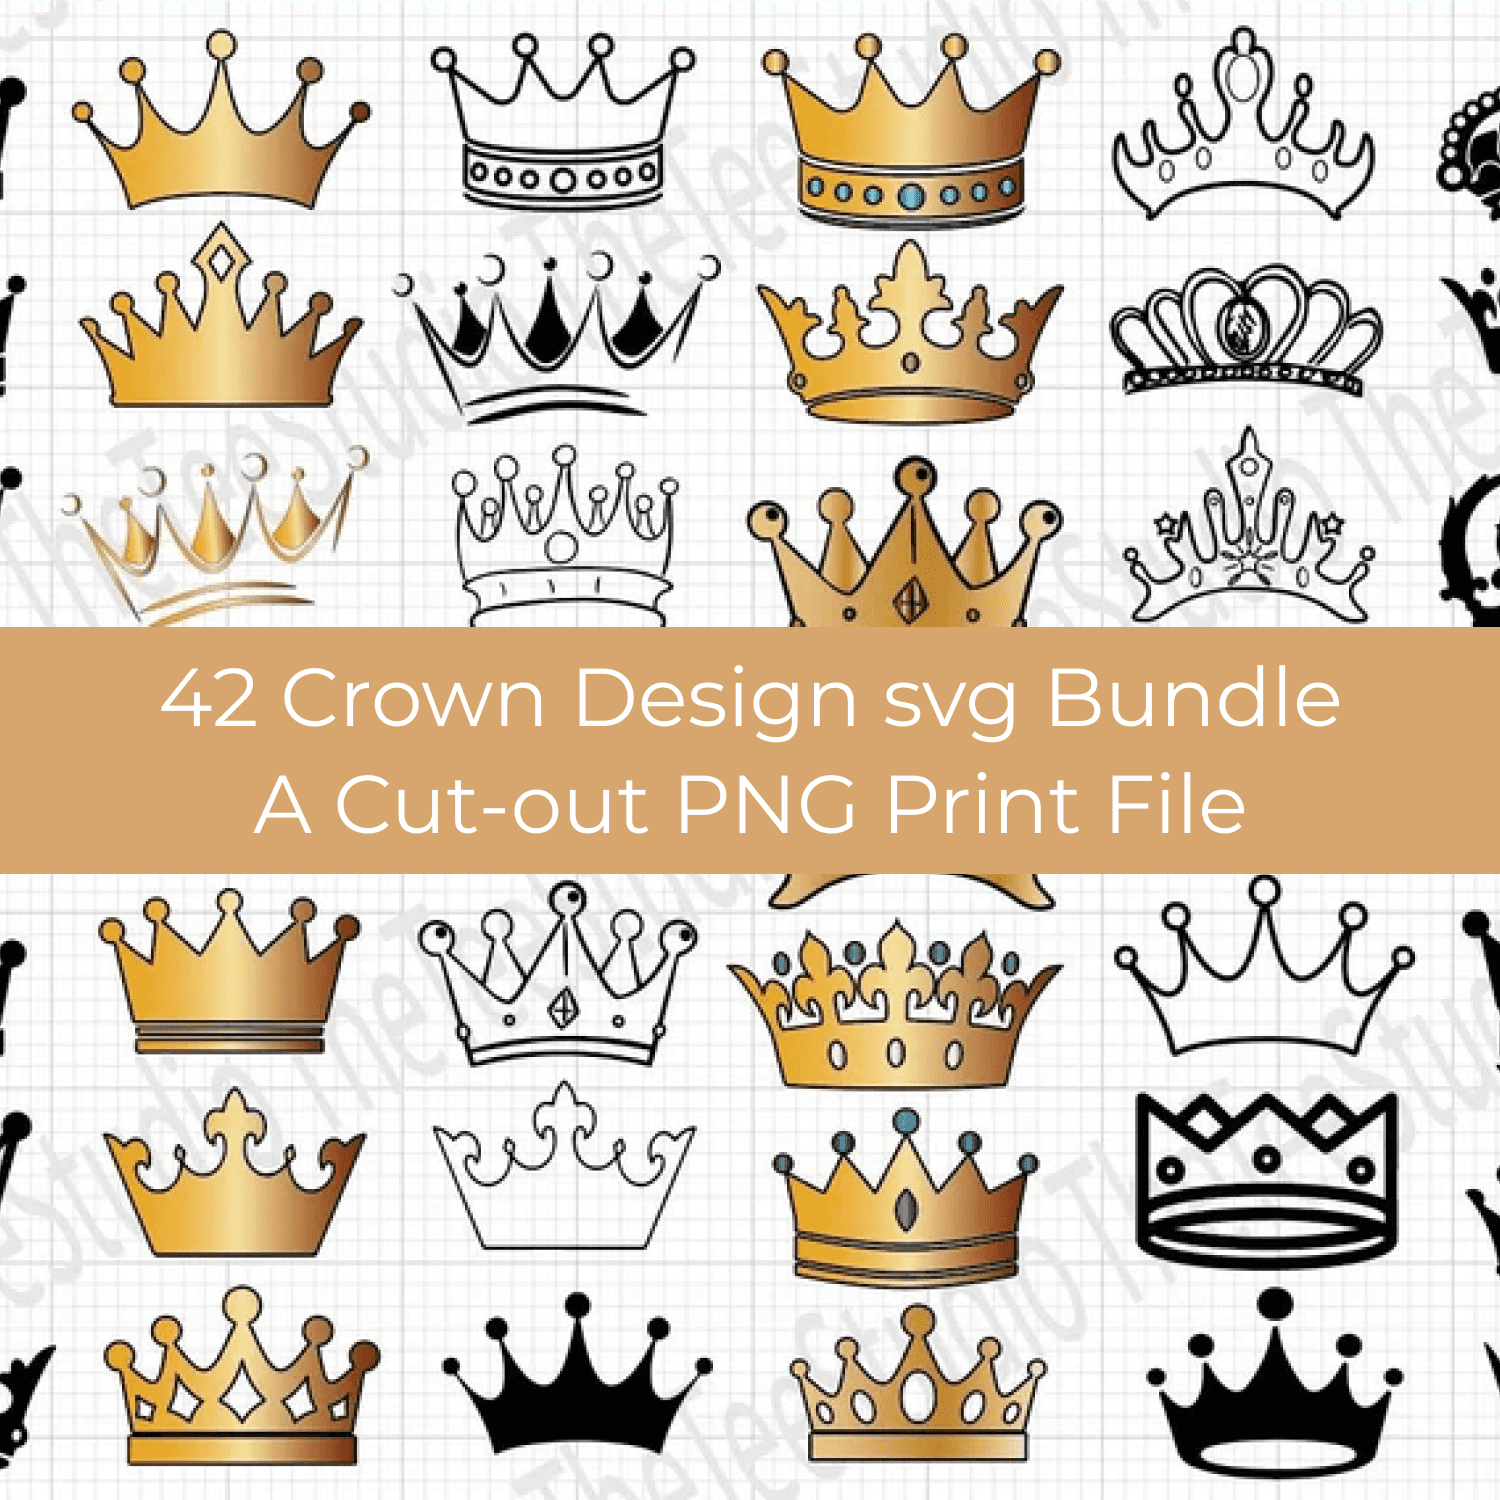 42 Crown Design Svg Bundle image.